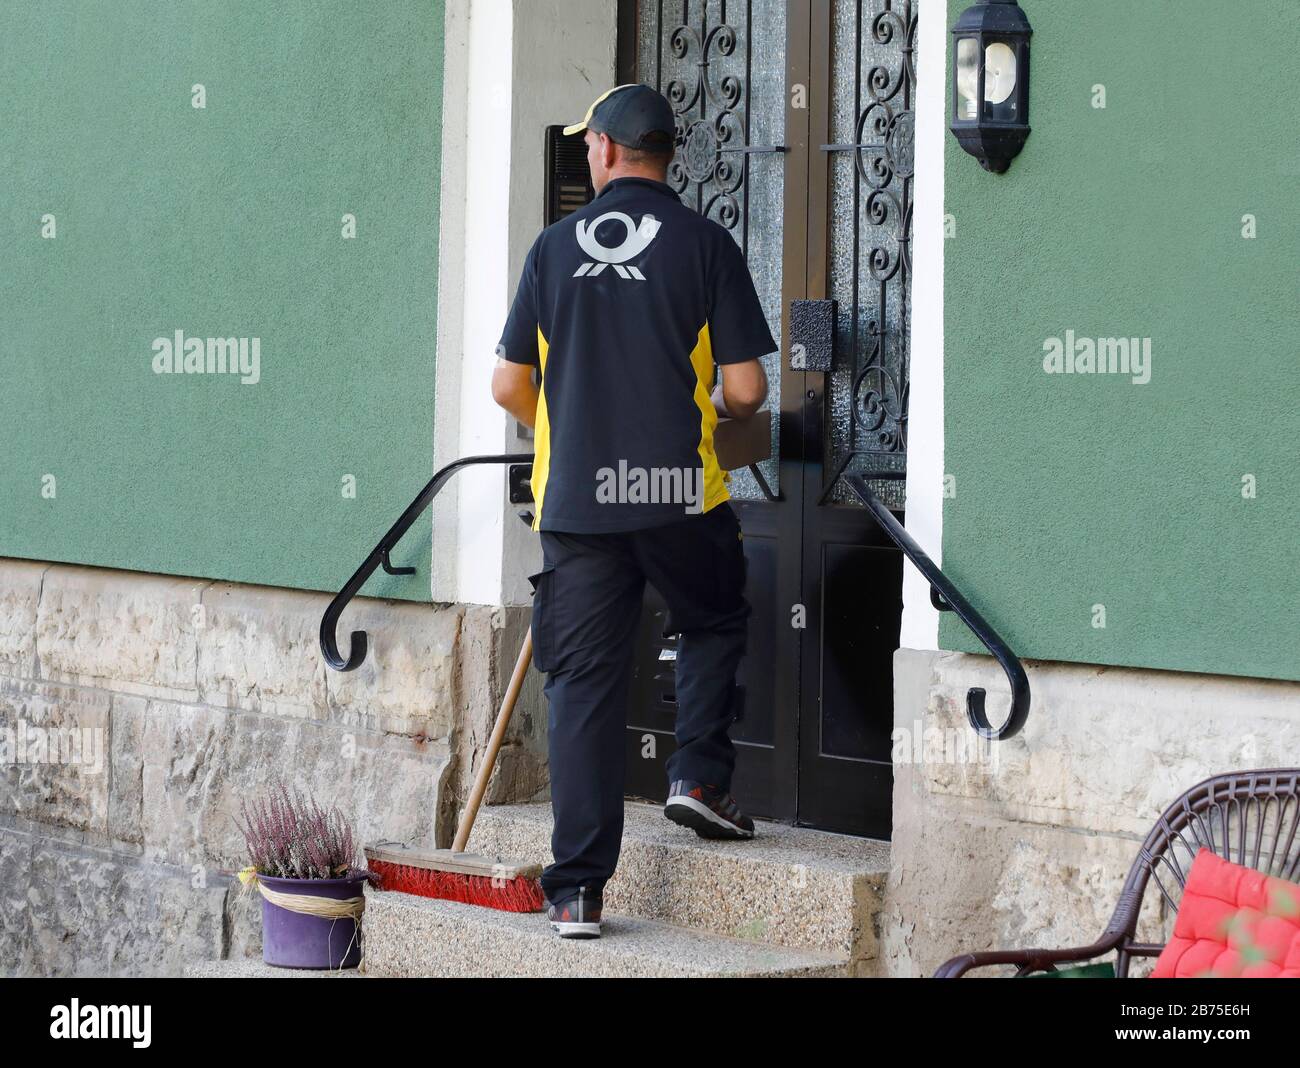 Un livreur DHL avec le paquet en main attend sur les escaliers d'une maison à une porte d'entrée pour être laissé dans, le 06.10.2018. [traduction automatique] Banque D'Images